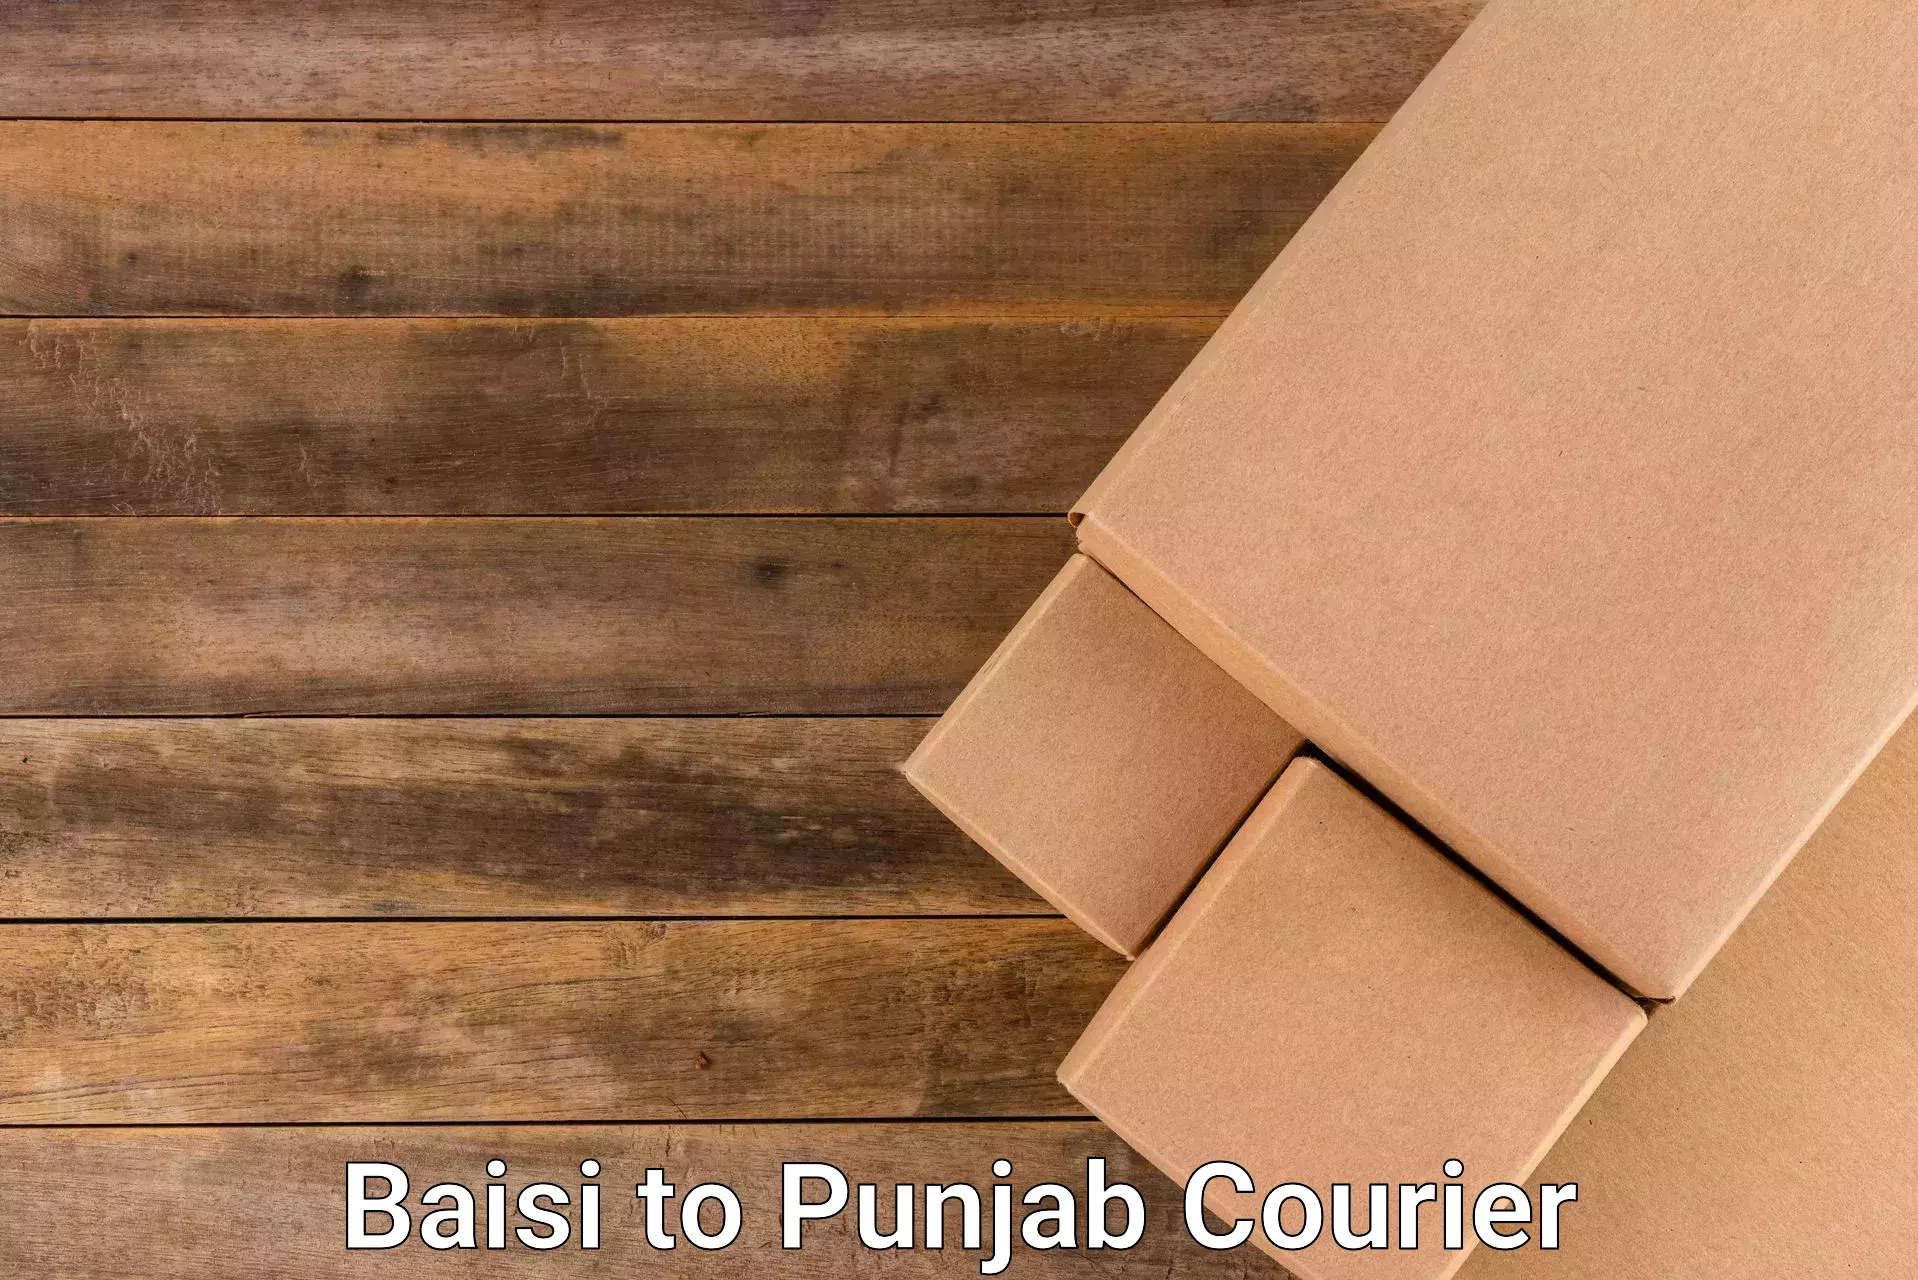 Ground shipping Baisi to Punjab